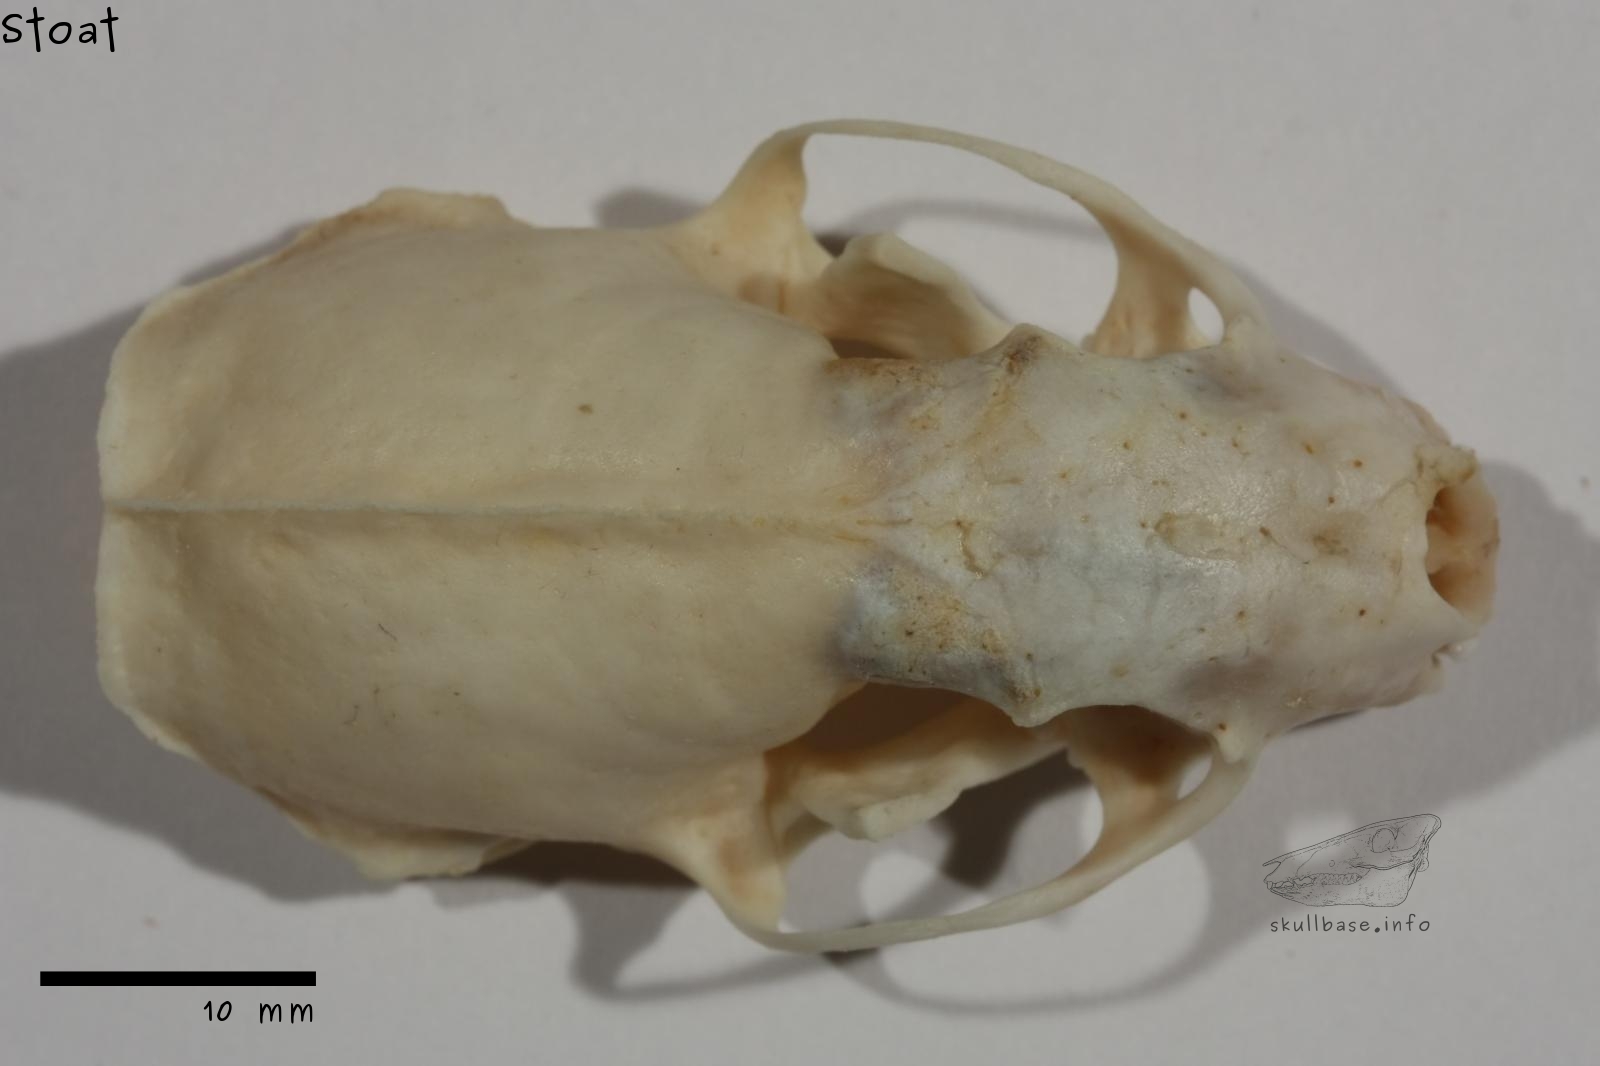 Stoat (Mustela erminea) skull dorsal view